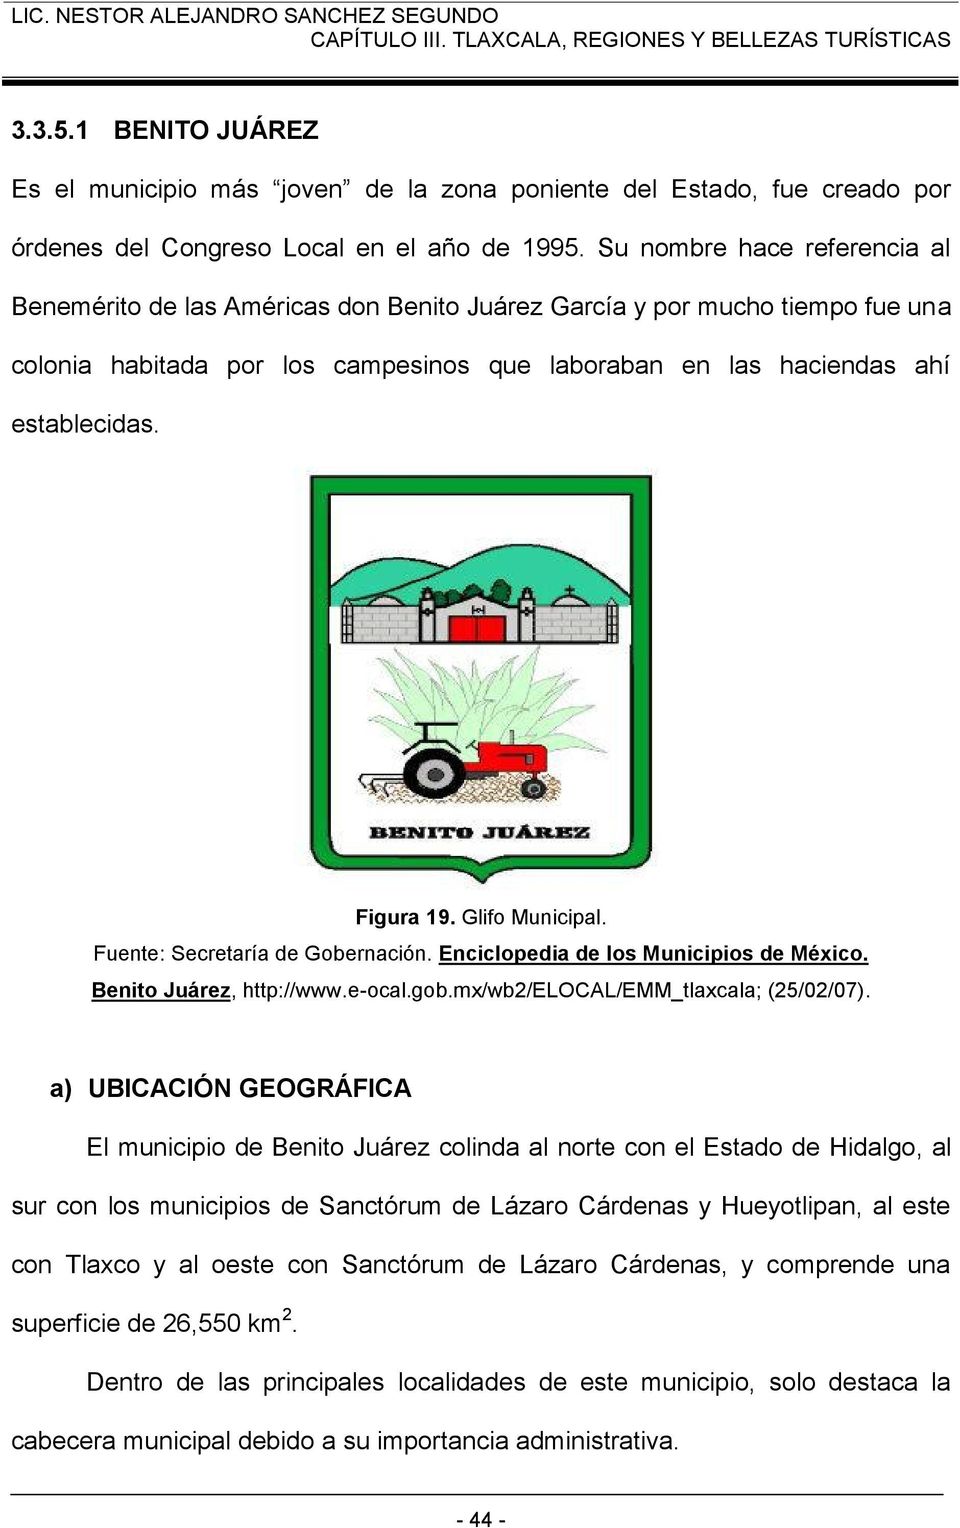 Figura 19. Glifo Municipal. Fuente: Secretaría de Gobernación. Enciclopedia de los Municipios de México. Benito Juárez, http://www.e-ocal.gob.mx/wb2/elocal/emm_tlaxcala; (25/02/07).